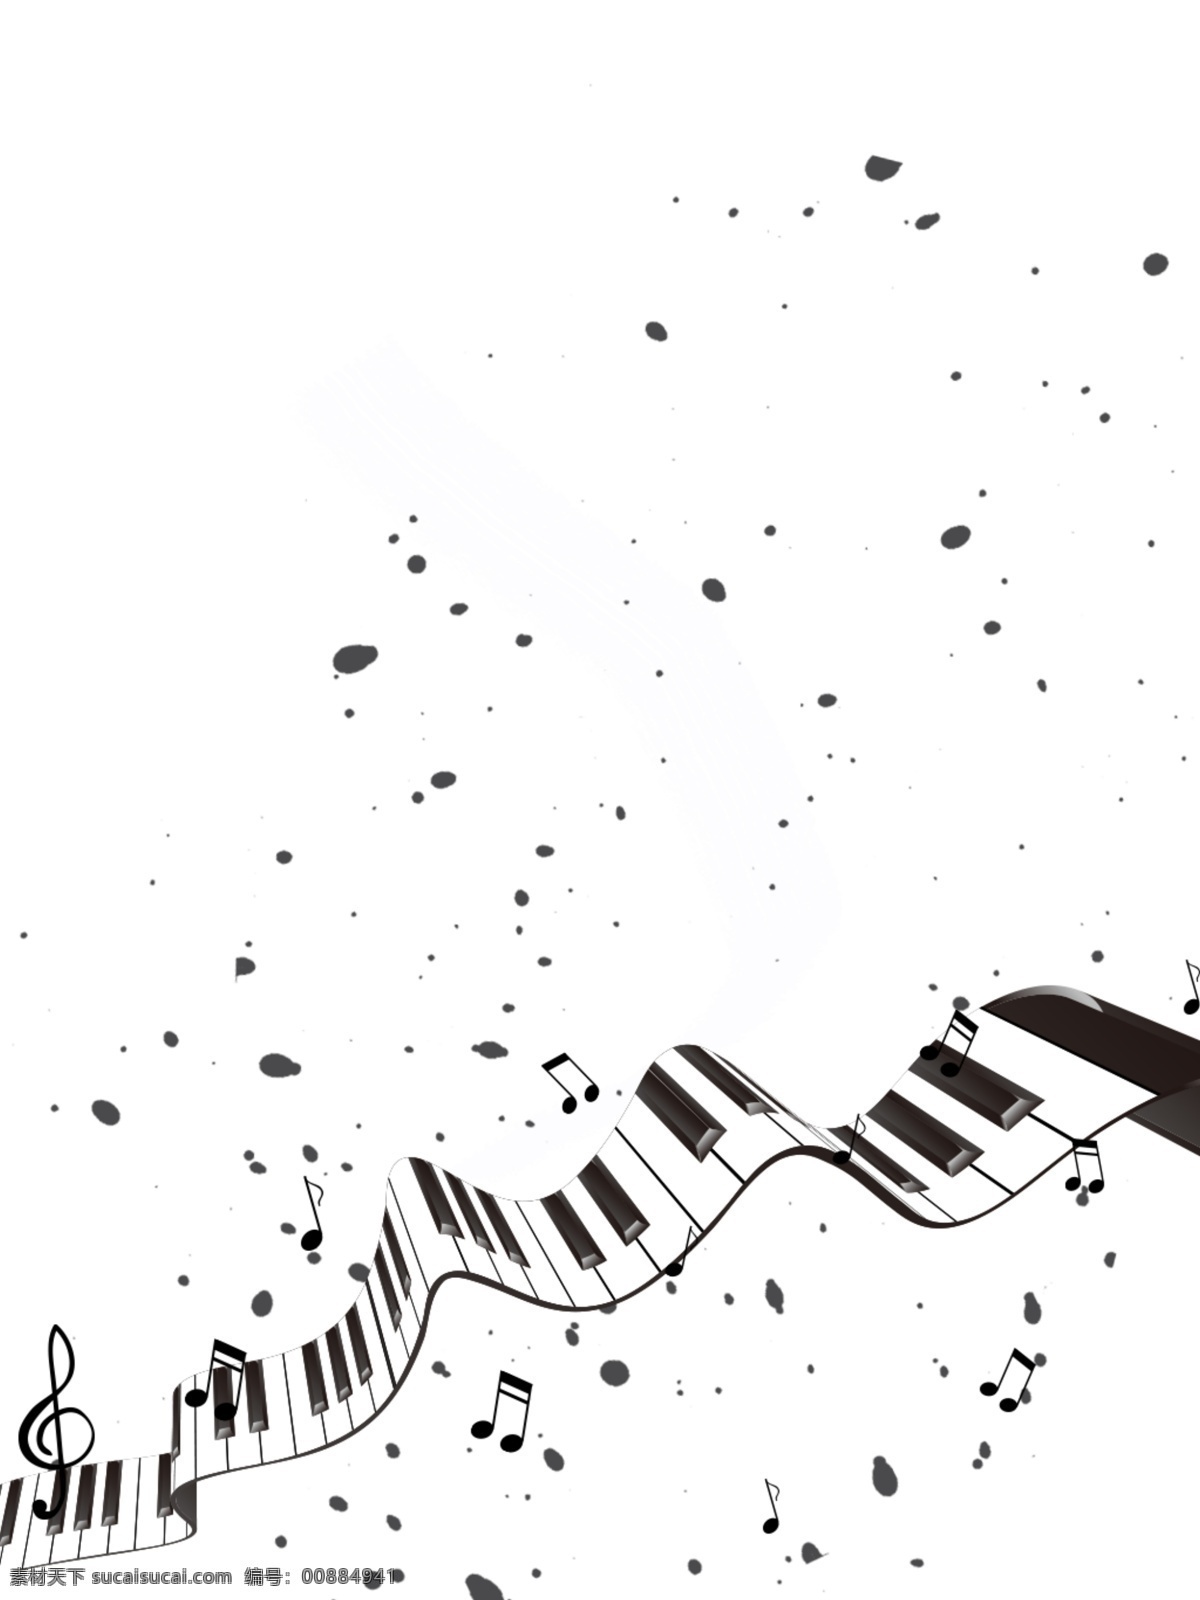 琴键 音符 黑白 风 海报 背景 钢琴键 卡通 插画 时值 刻图 音乐音符 乐谱 钢琴 键盘 按键 键子 卡通素材 乐器 器材 音符表 二分休止符 四分休止符 八分休止符 全音符 二分音符 四分音符 八分音符 十六分音符 乐器培训 休止符 器乐培训 背景墙 硅藻泥 元素 线条 音乐 音乐素材 艺术文艺类 分层